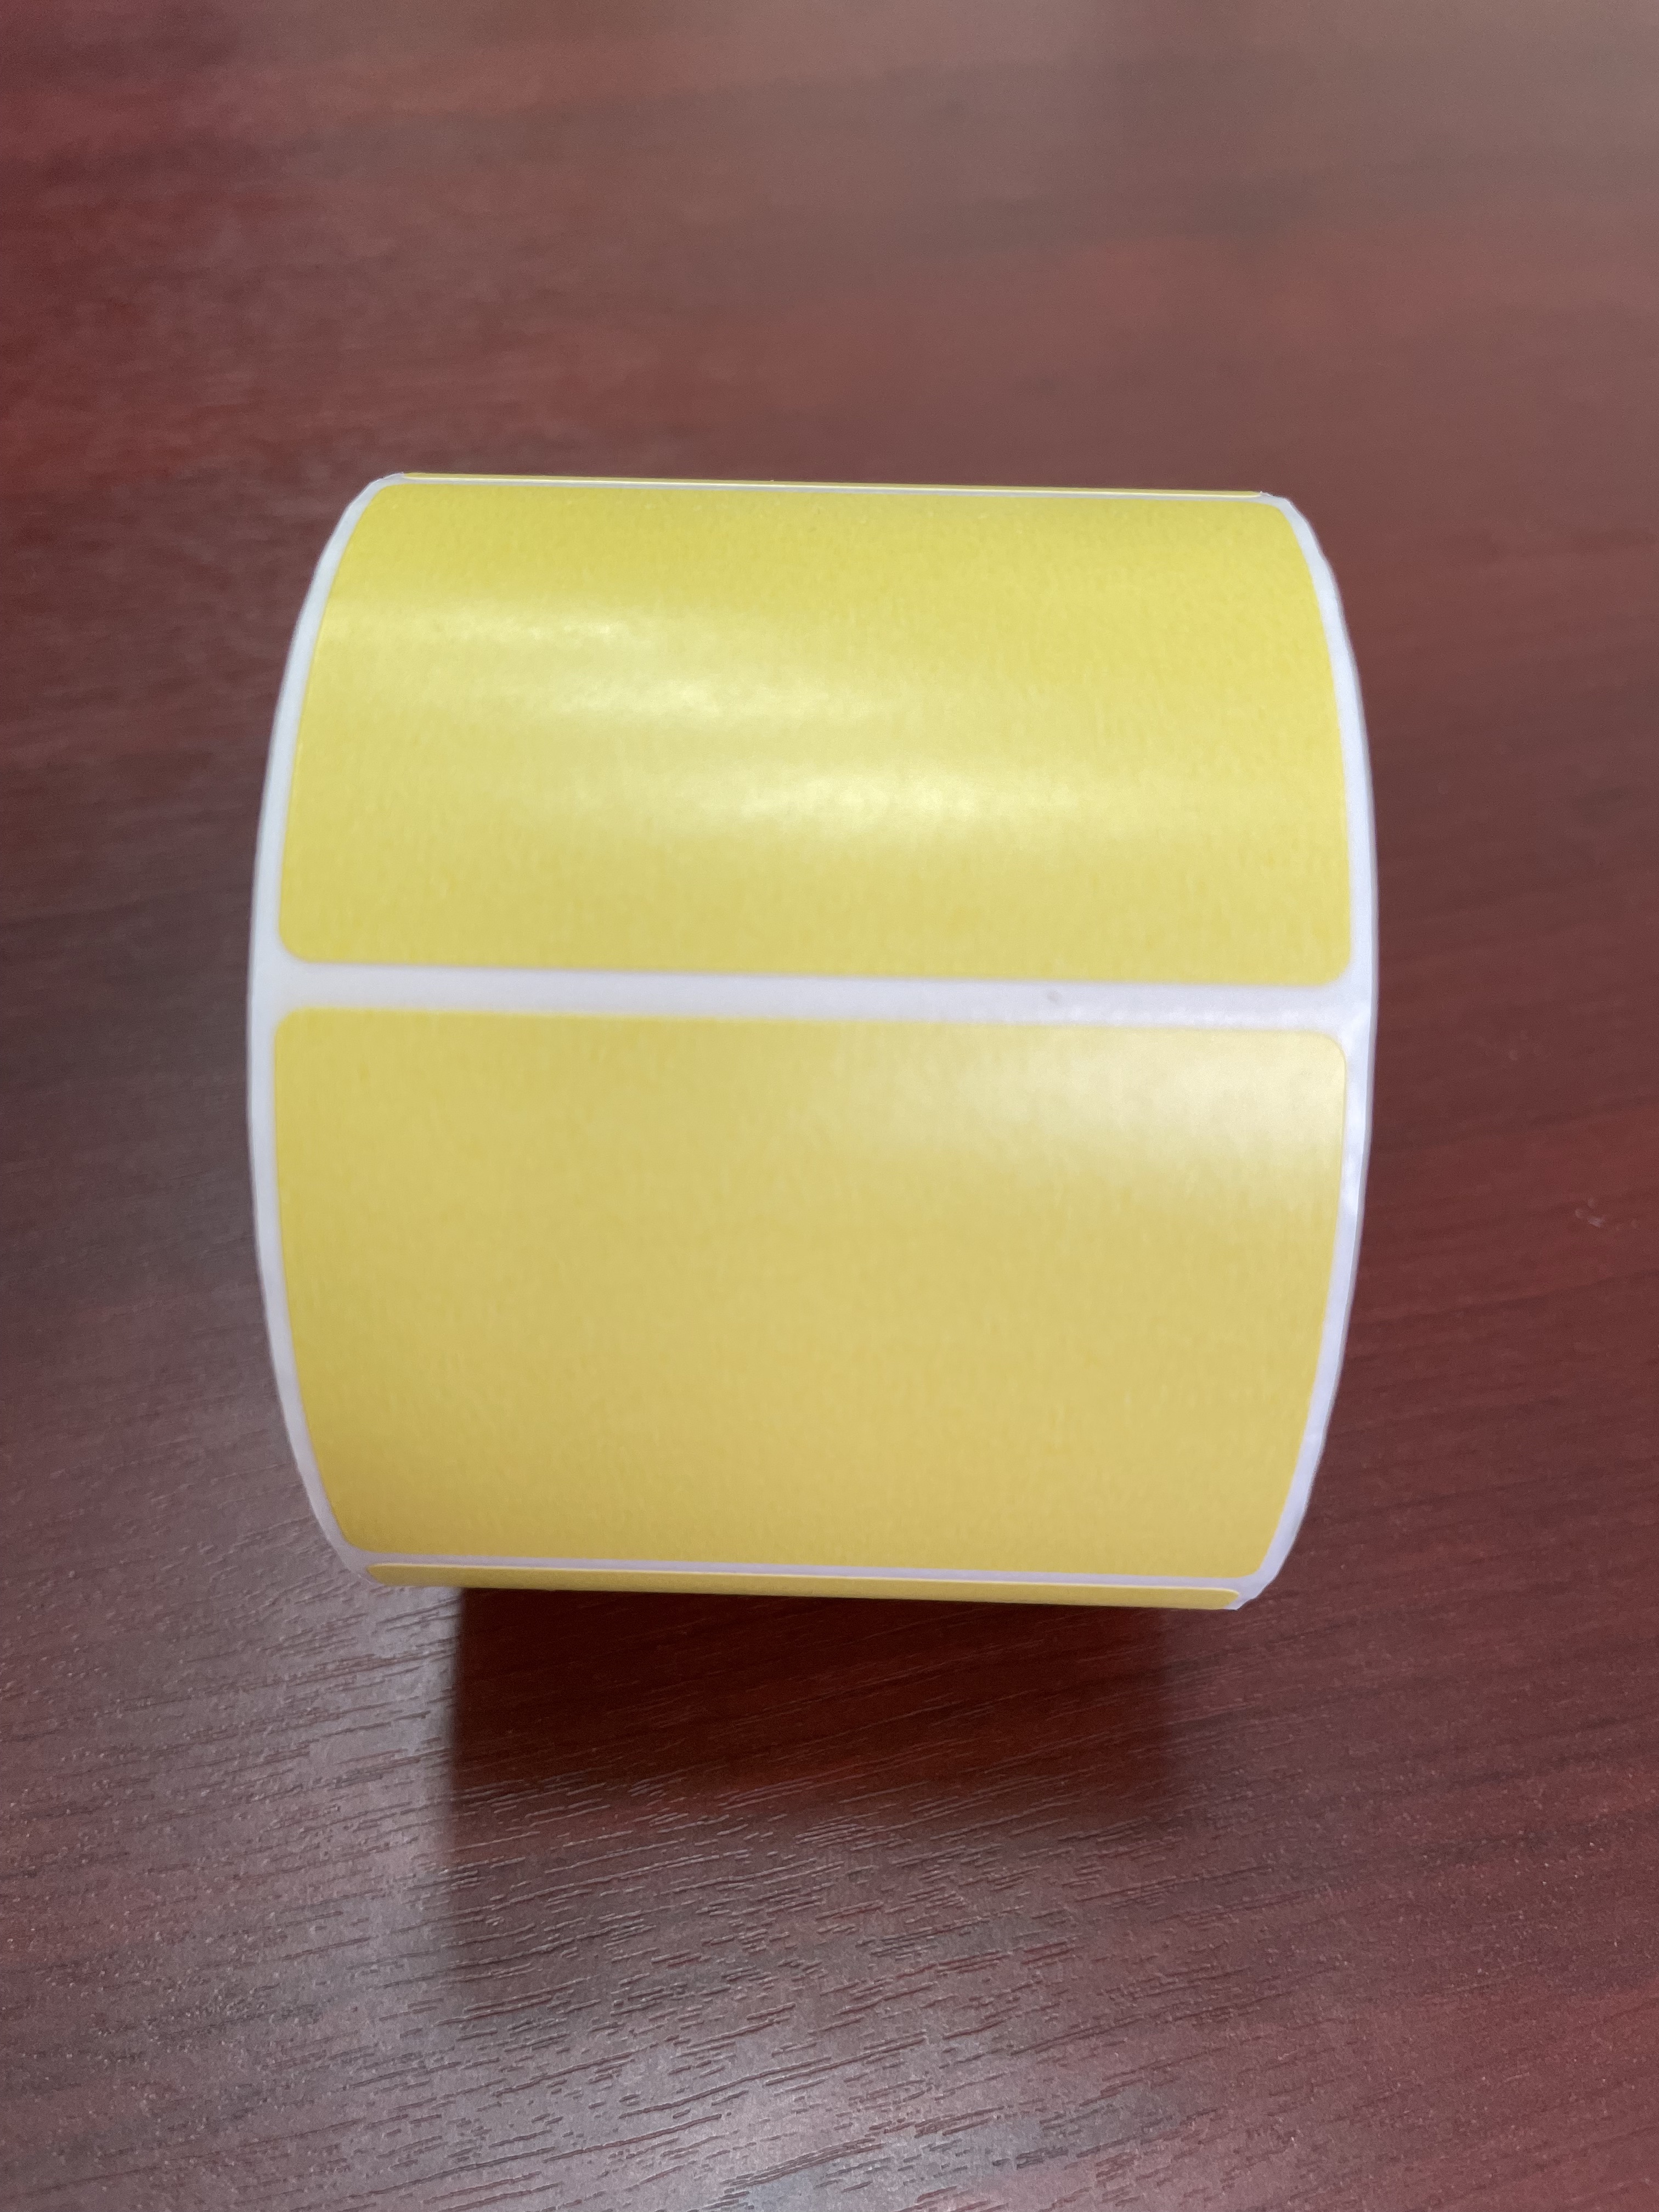 Фото 2 Этикетка 58х40 мм (700 шт. в рулоне) термо ЭКО, желтая, 250 ₽ за упаковку 1000 рулонов